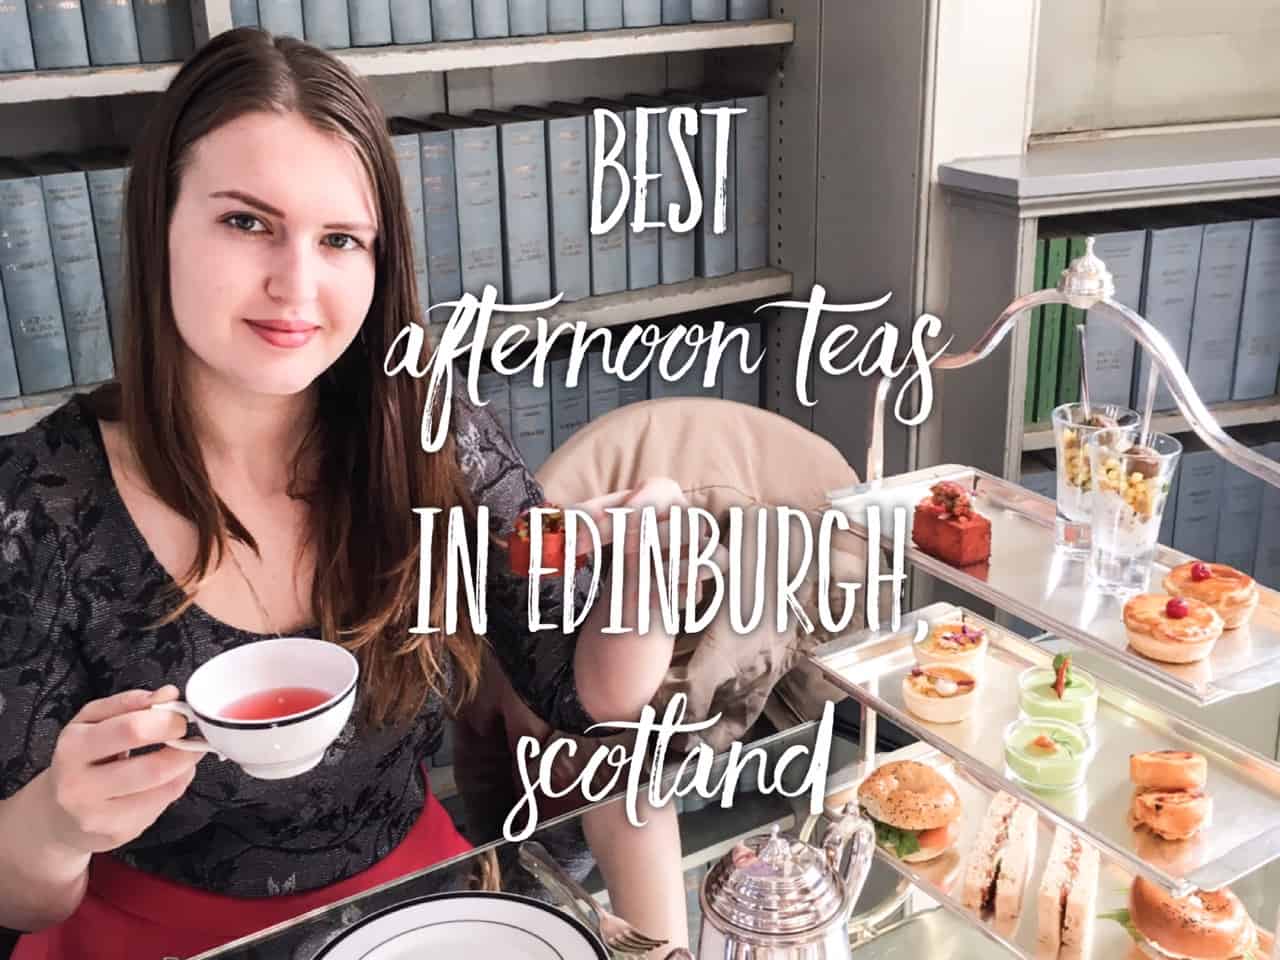 7 best Afternoon Teas in Edinburgh, Scotland | Tripsget